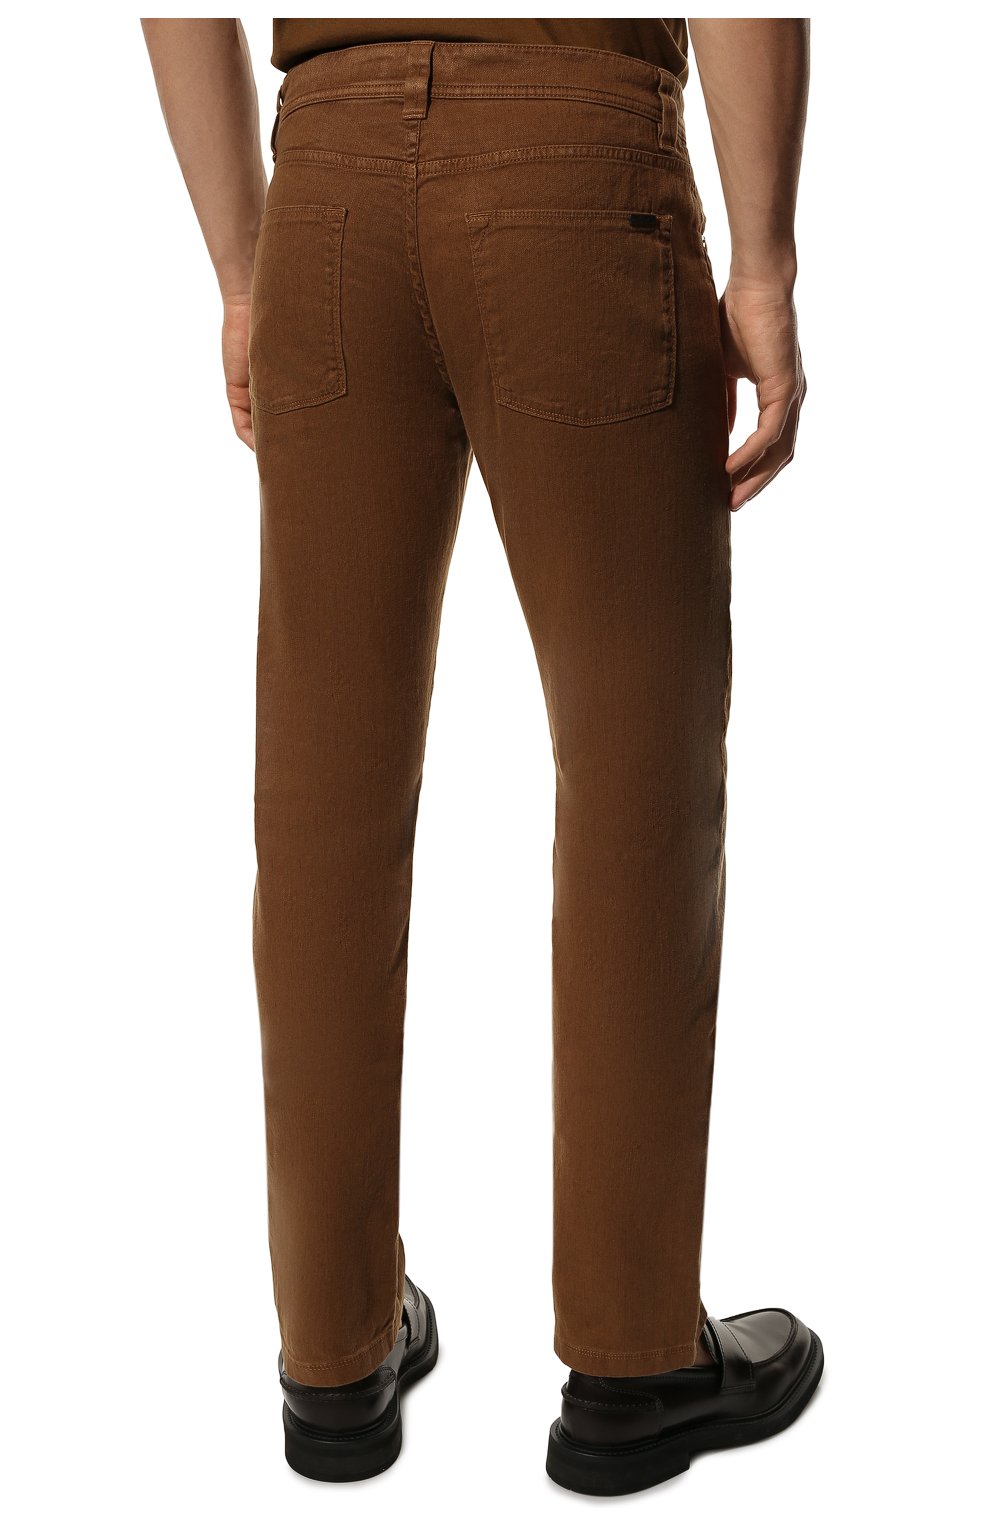 Мужские брюки изо льна и хлопка LORO PIANA коричневого цвета, арт. FAI1646 | Фото 4 (Длина (брюки, джинсы): Стандартные; Случай: Повседневный; Материал внешний: Хлопок, Лен; Стили: Кэжуэл)